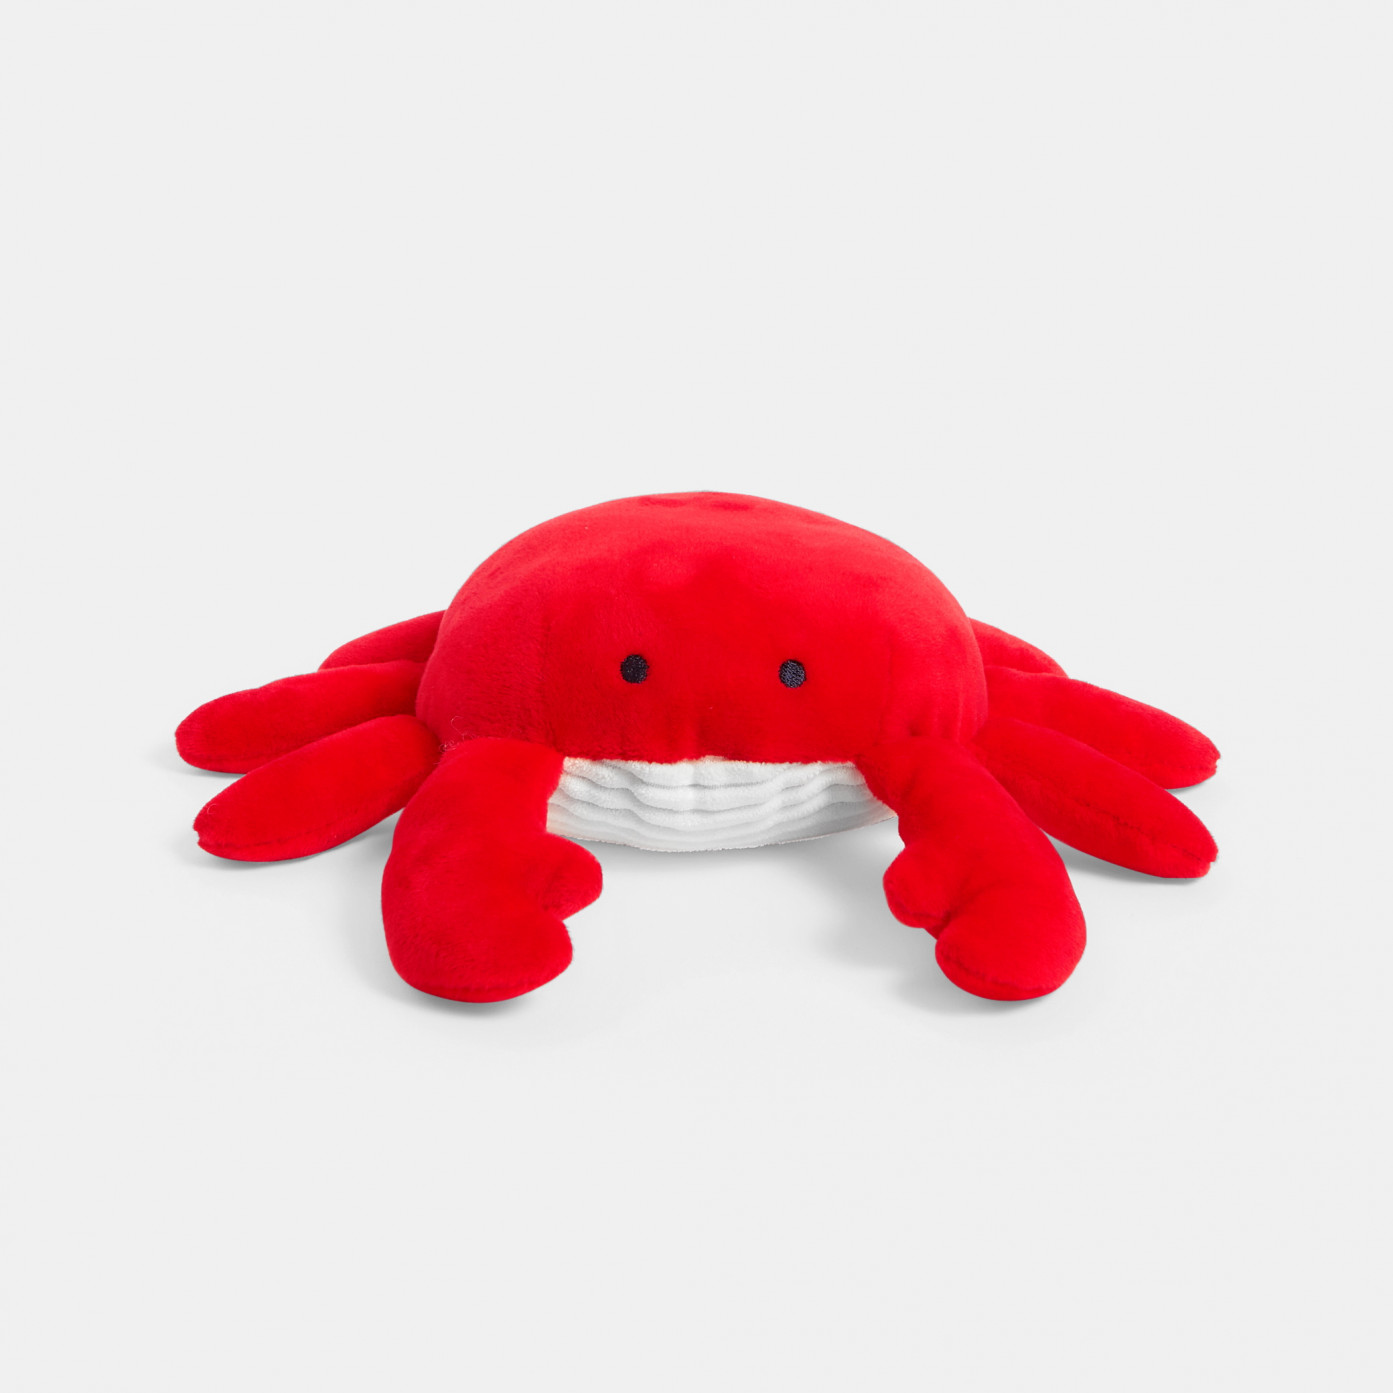 Měkká hračka pro rané učení - krab